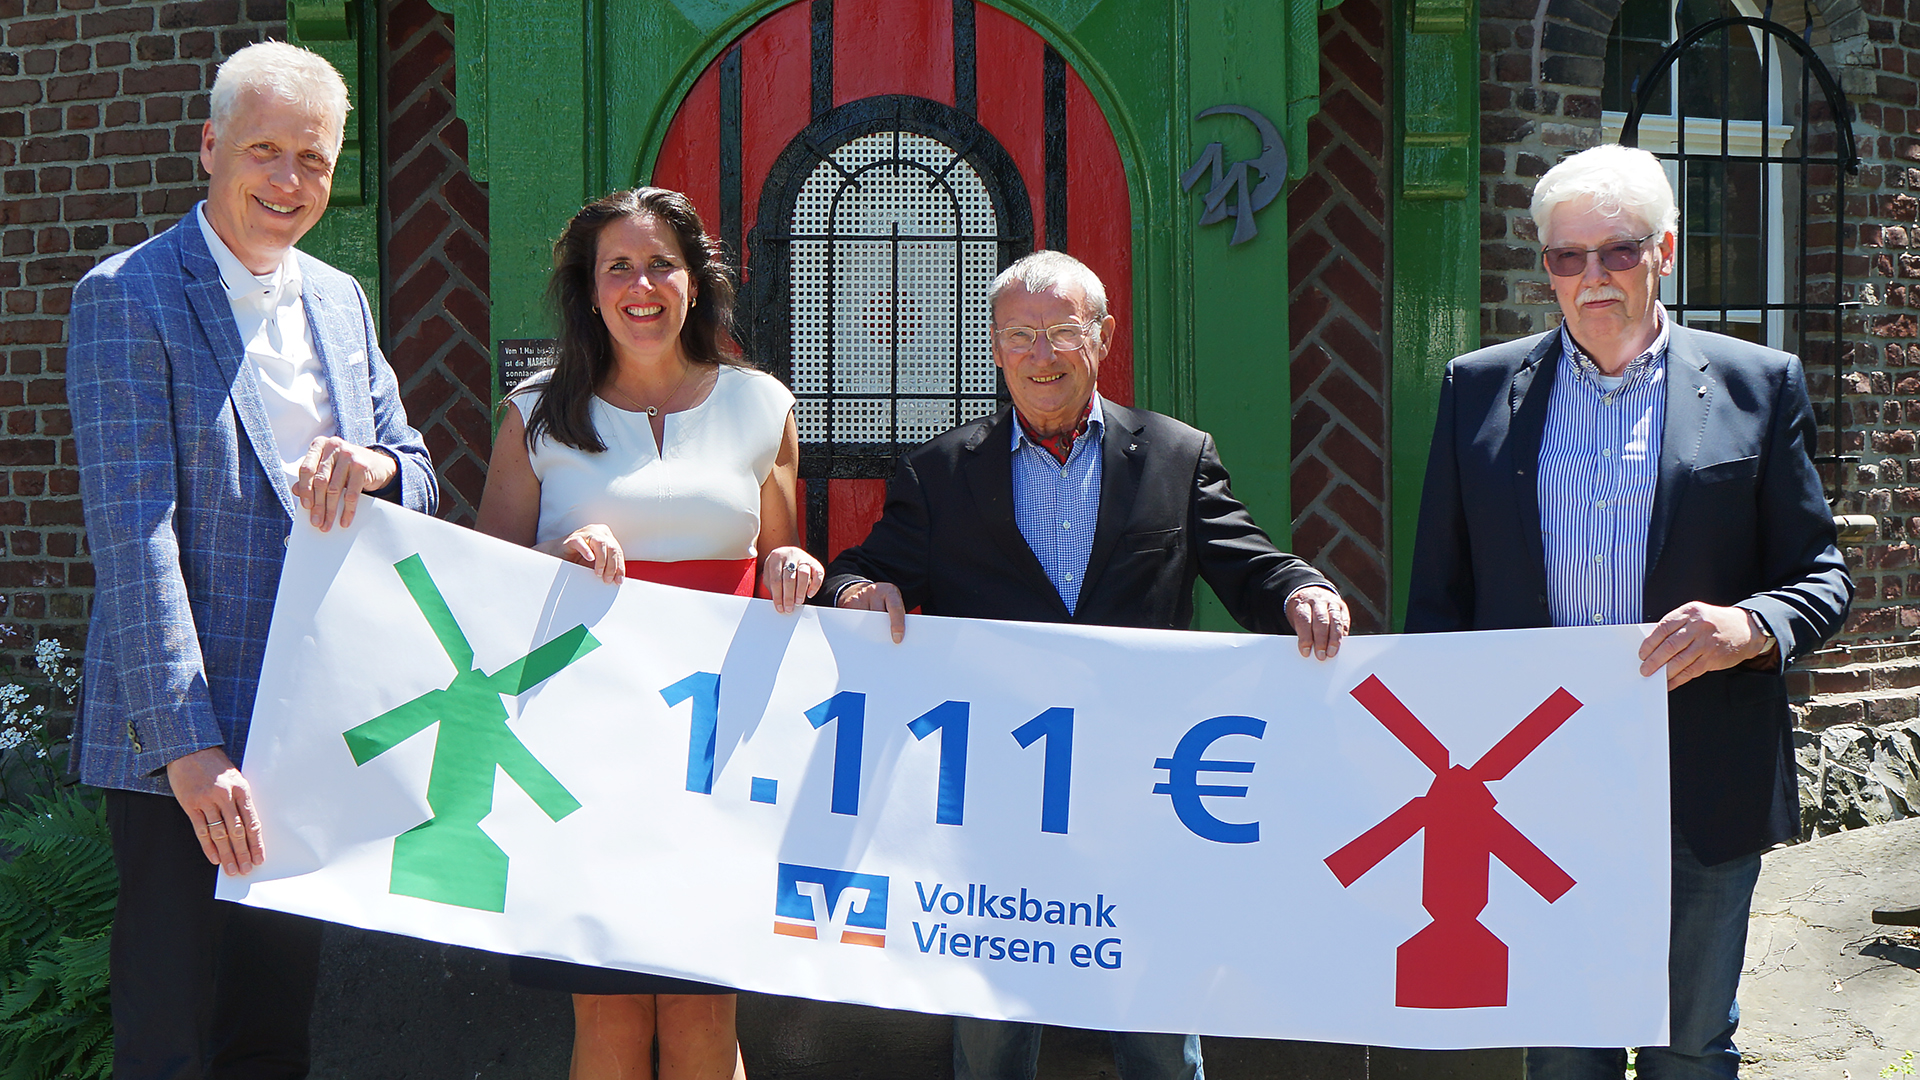 Die Volksbank Viersen spendet 1.111 Euro für den Wiederaufbau der Narrenmühle. Jürgen Cleven (Vorstand der Volksbank Viersen), Simone Gartz (Ortsbürgermeisterin von Dülken), Dr. Volker Müller und Hartwig Hören (Förderverein der Narrenmühle) freuen sich, dass die Mühle wieder aufgebaut wurde.